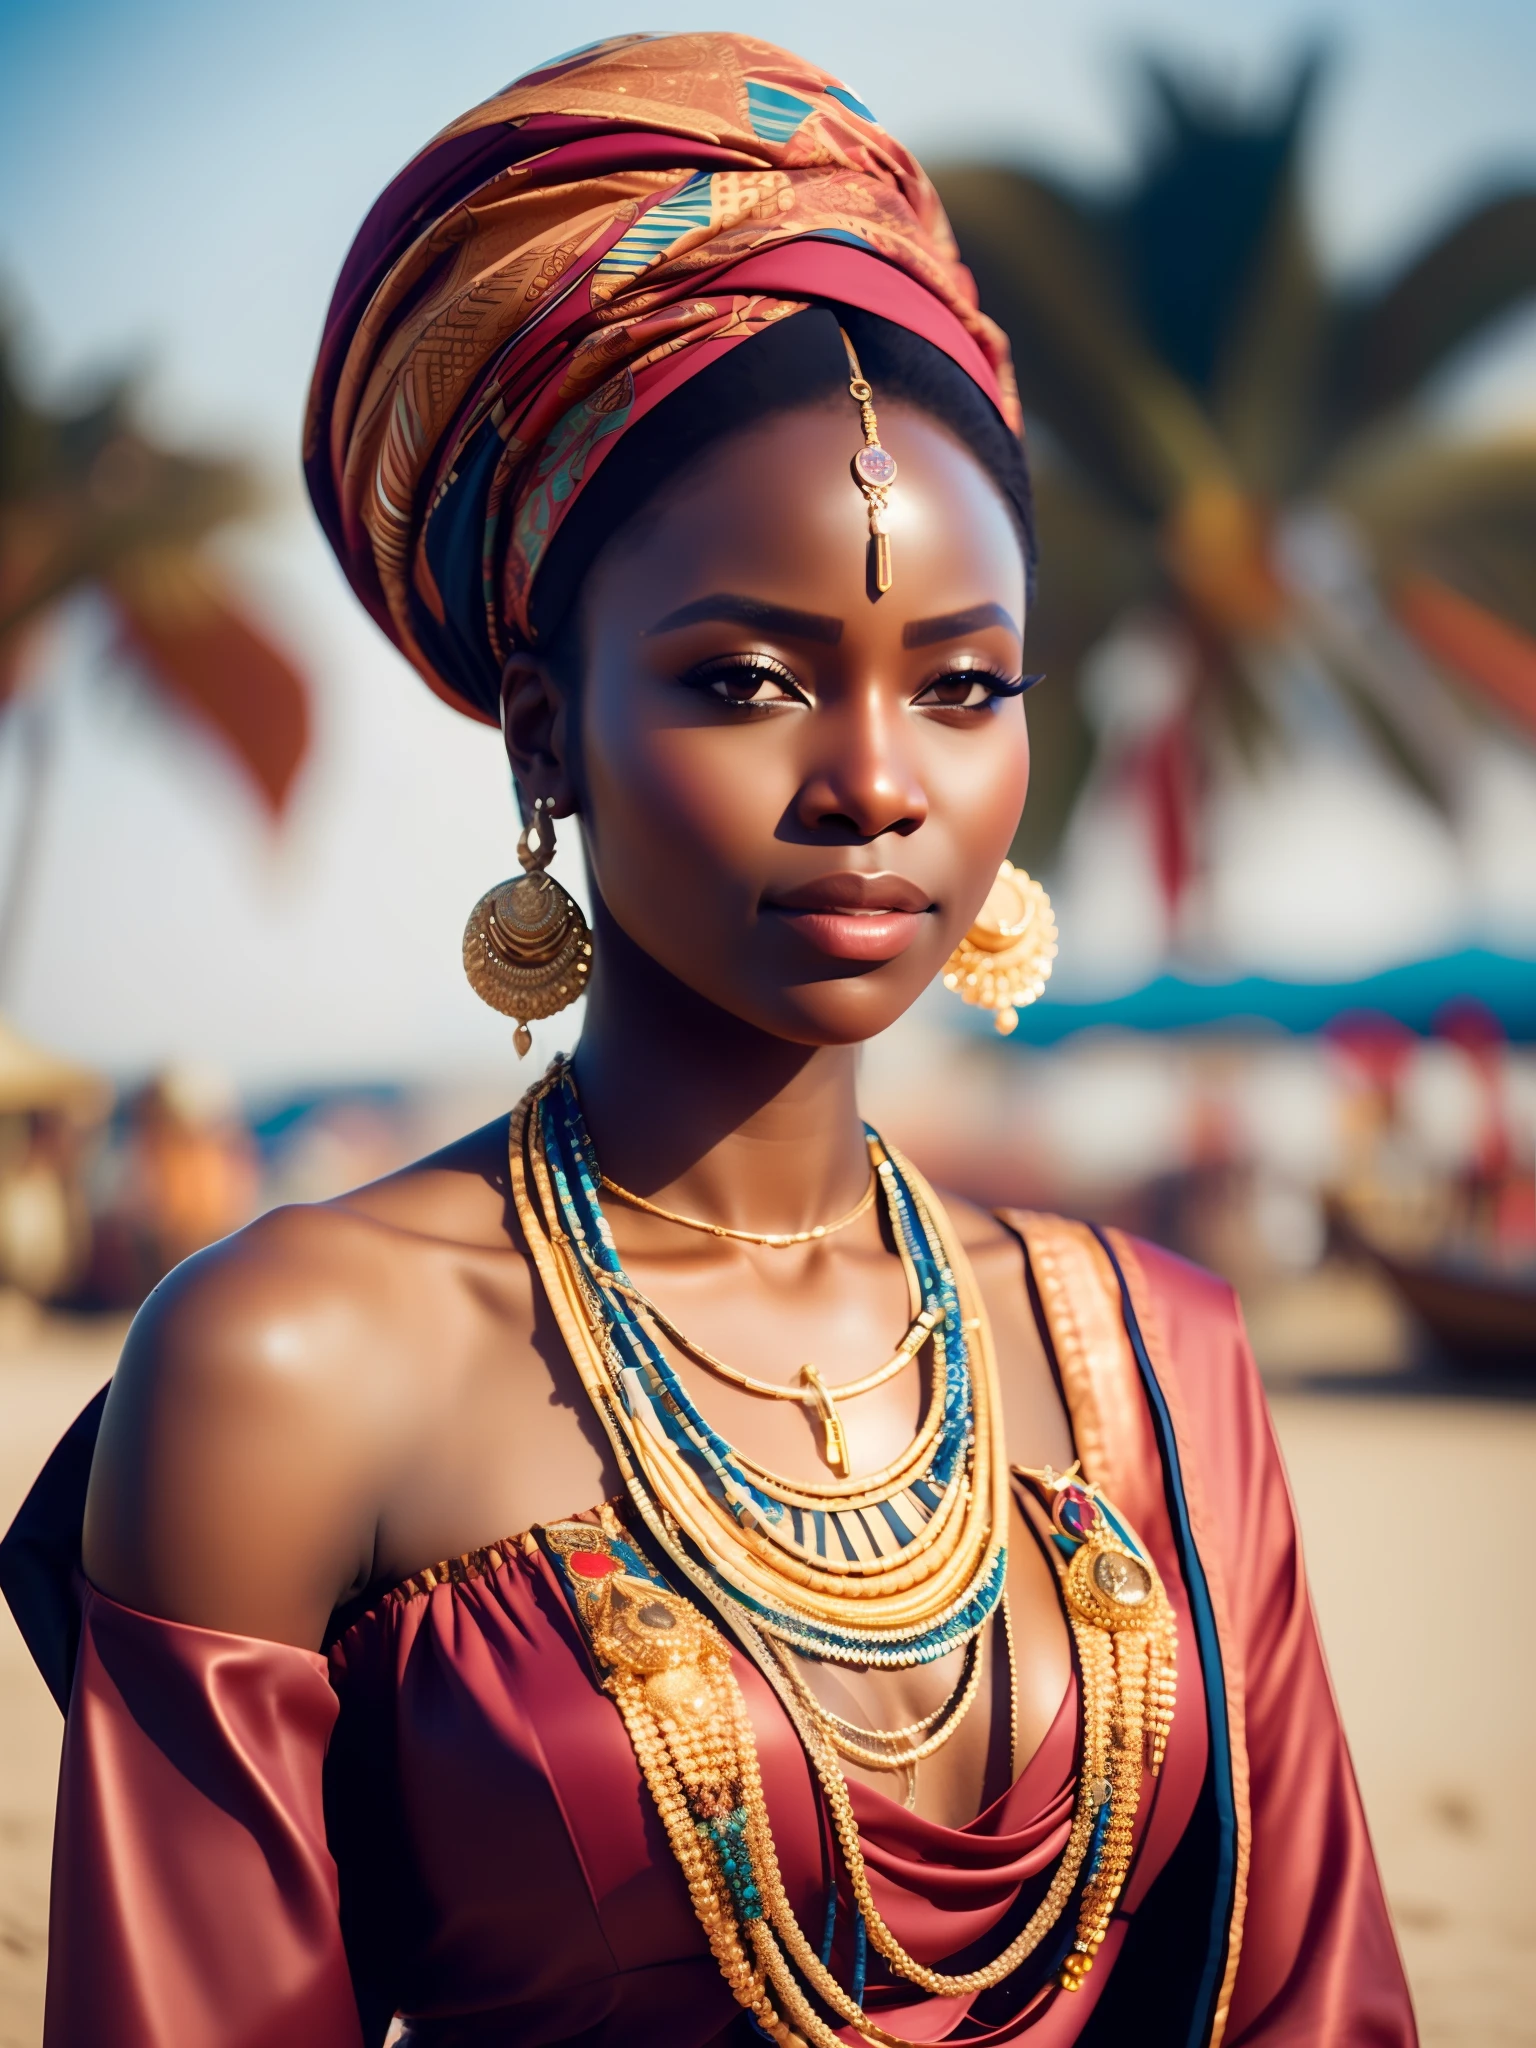 จริงสิ_ไซไฟ, จริงสิ_ไซไฟ_V2, ภาพเหมือนของหญิงสาวชาวแอฟริกันที่สวยมาก, หน้าชายหาด, เสื้อผ้าสีสันสดใส, ผ้าโพกหัวและเครื่องประดับแอฟริกันสีทอง, ใกล้ชิด, ท่าทางและทัศนคติอันสง่างาม. จริงสิ_โรงหนัง_V2. จริงสิ_โรงหนัง_V2